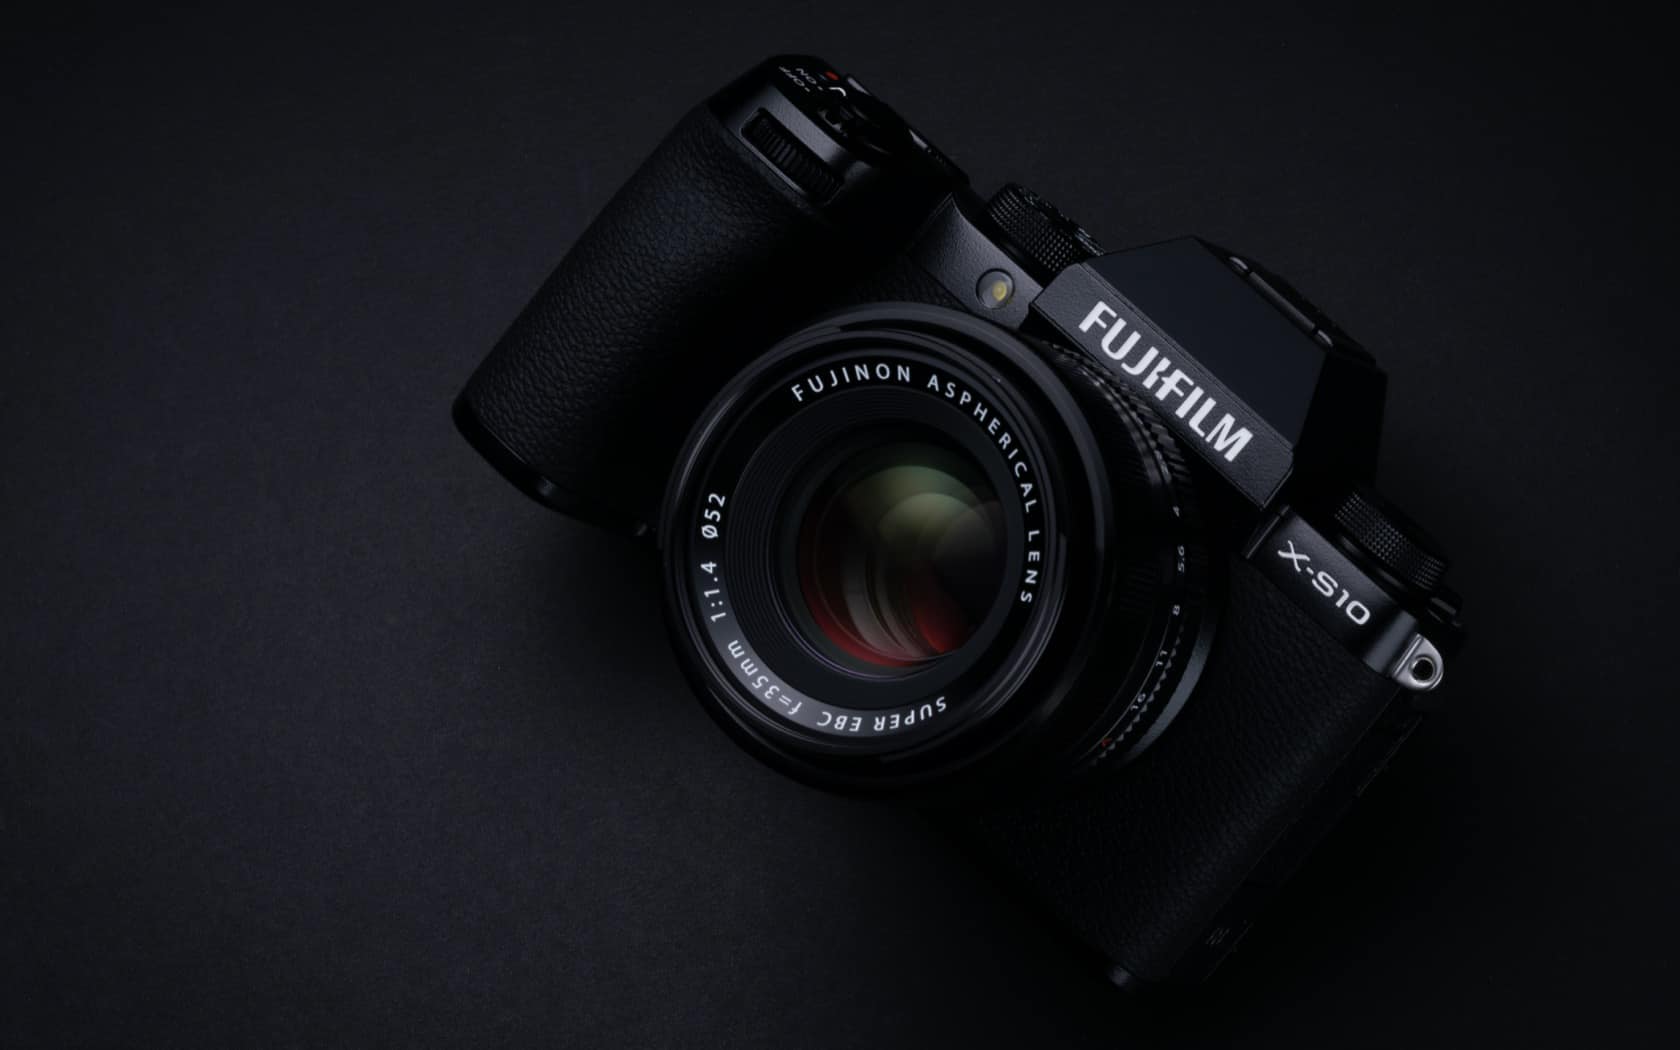 Fujifilm X-S10